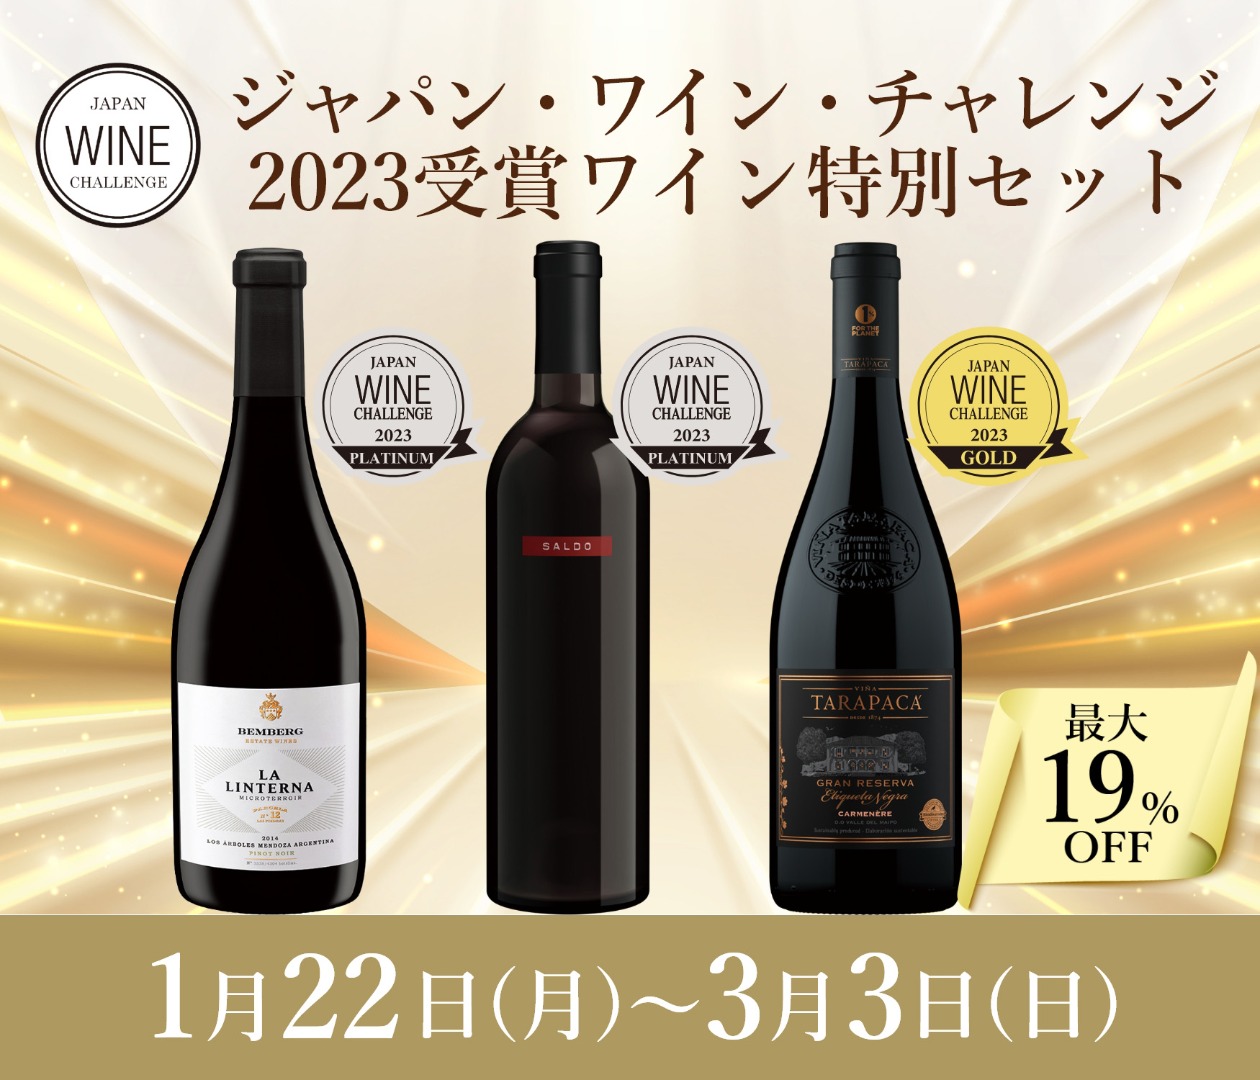 ジャパン・ワイン・チャレンジ 2023受賞ワイン特別セット